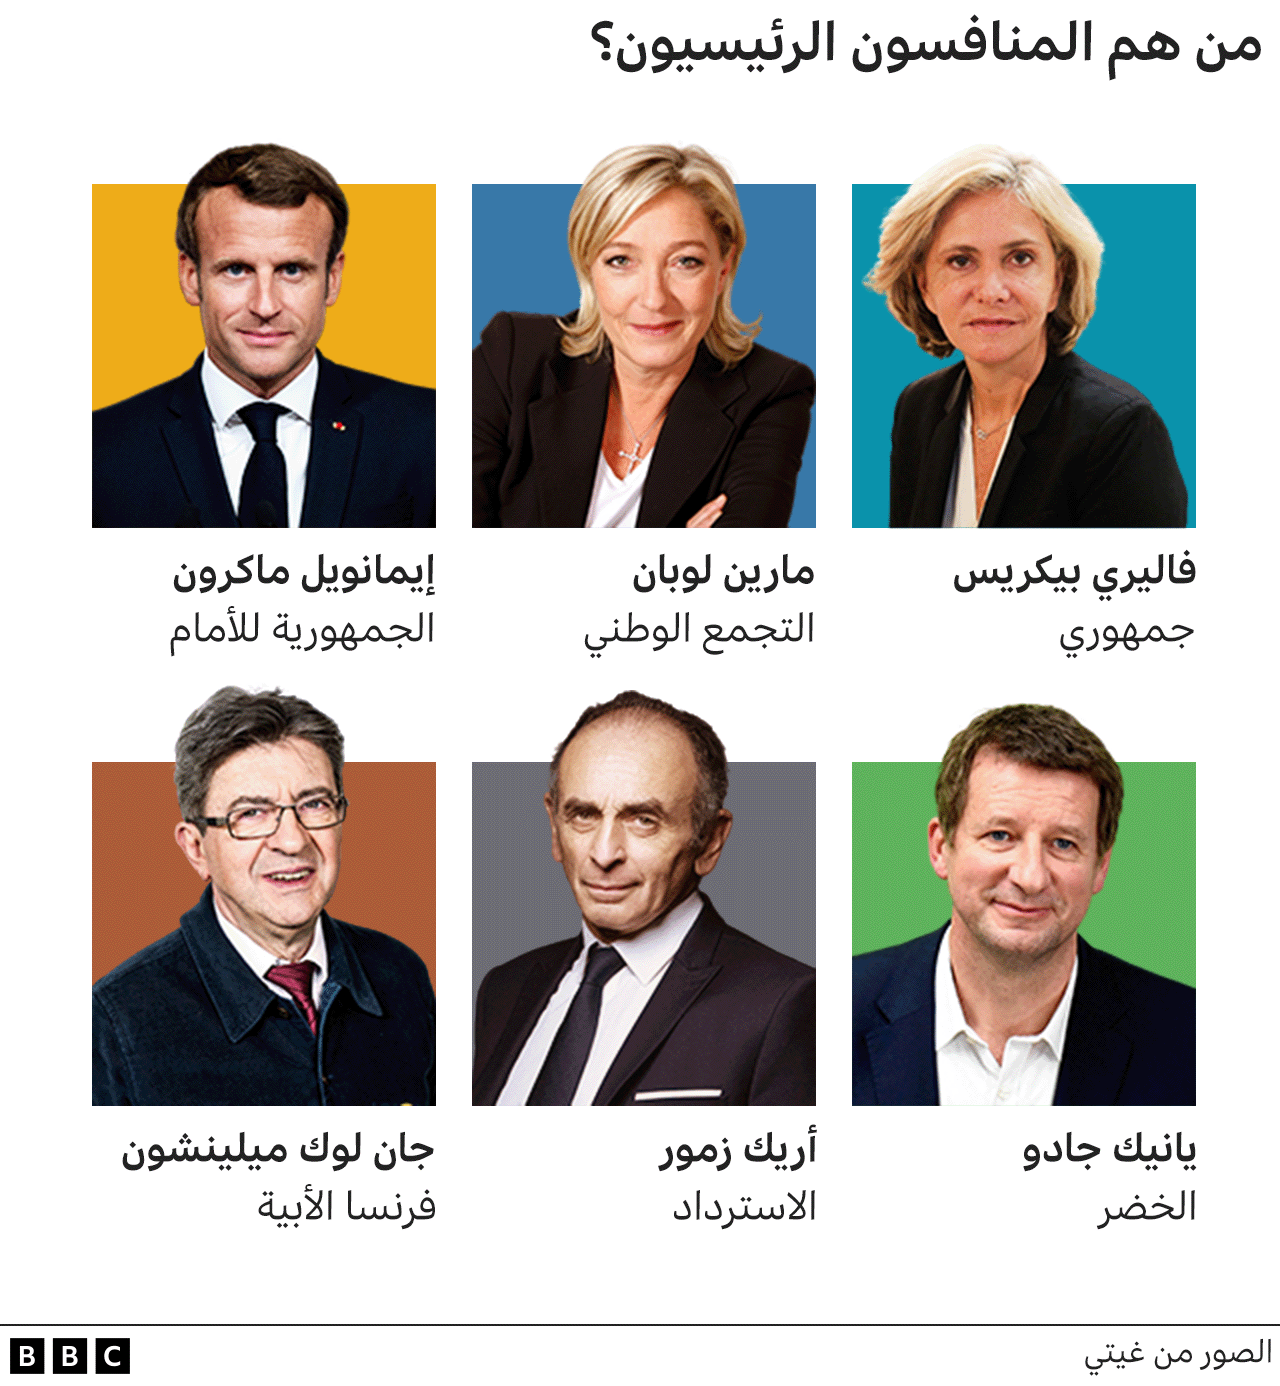 صور للمتنافسين الرئيسيين في الانتخابات الفرنسية